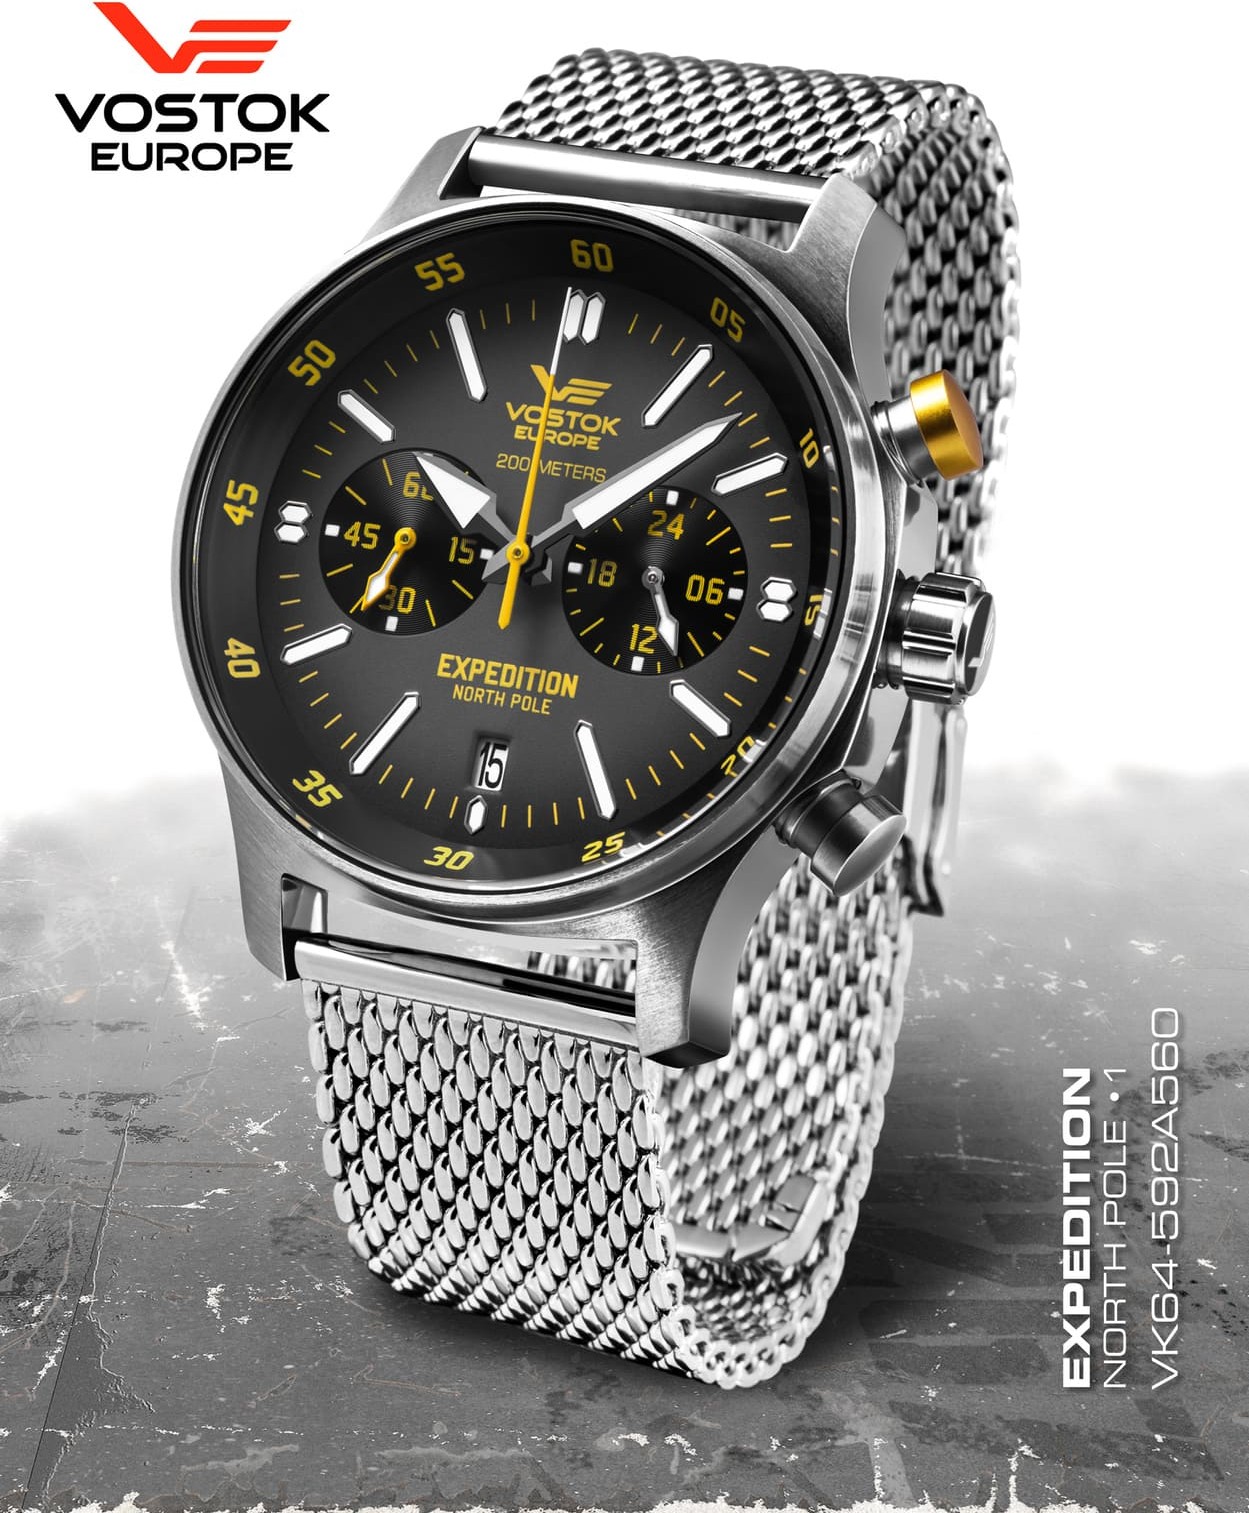  Vostok Europe Expedition Nordpol 1 Chronograph schwarz/gelb 